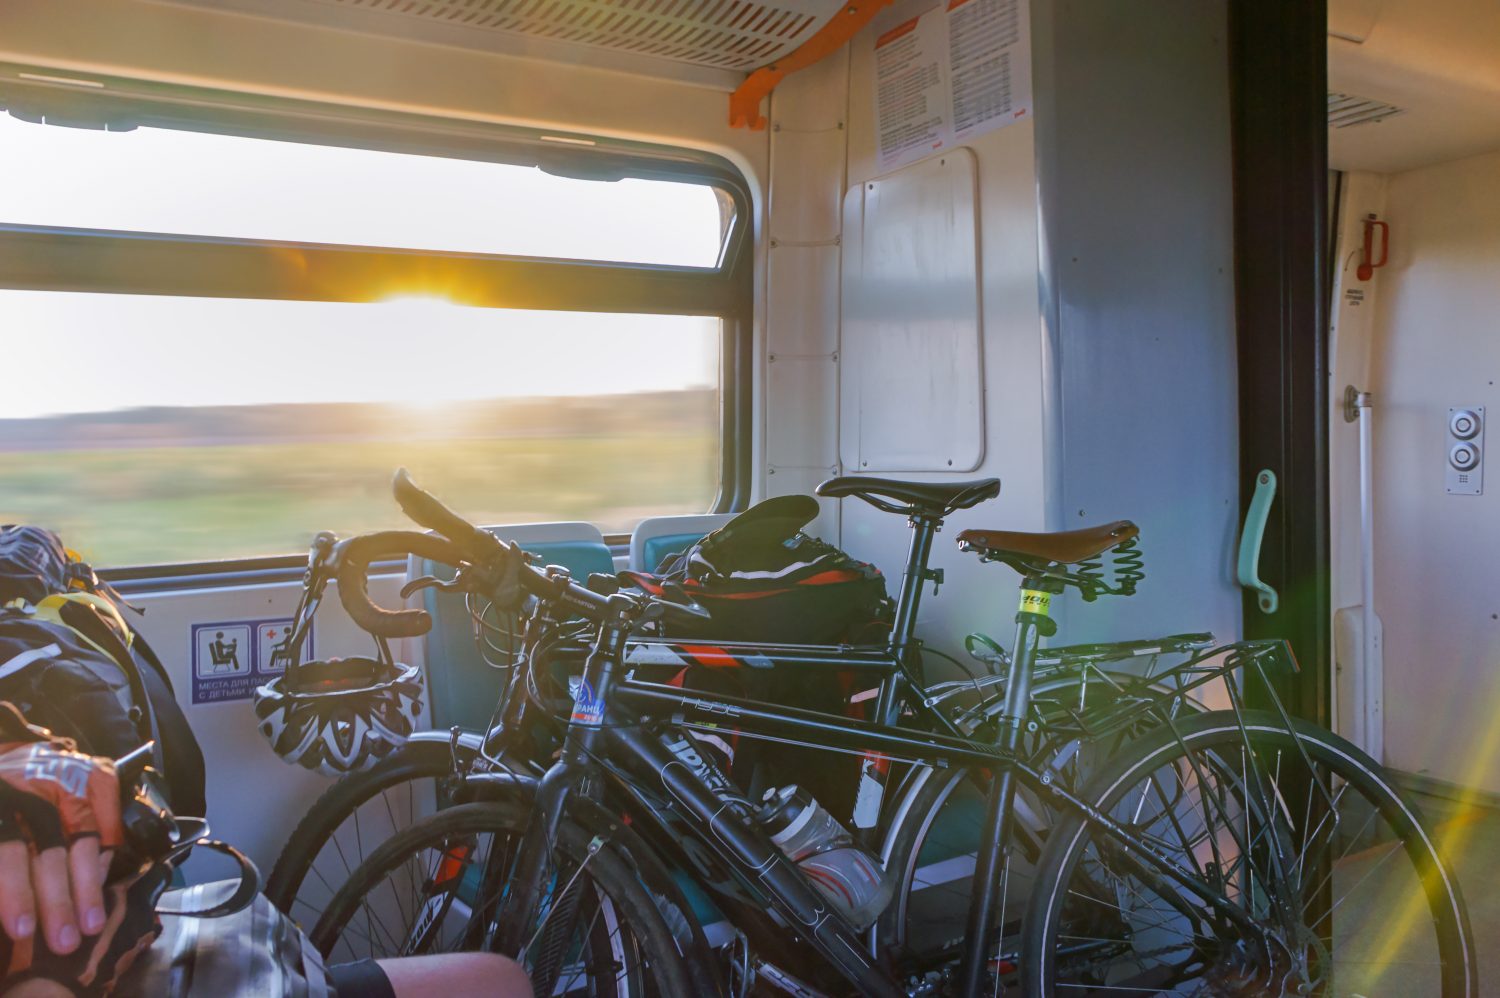 Mezi povinnosti dopravních společností patří také informování o přepravě imobilních cestujících, domácích mazlíčků, jízdních kol a dalších zavazadel. Foto: Shutterstock